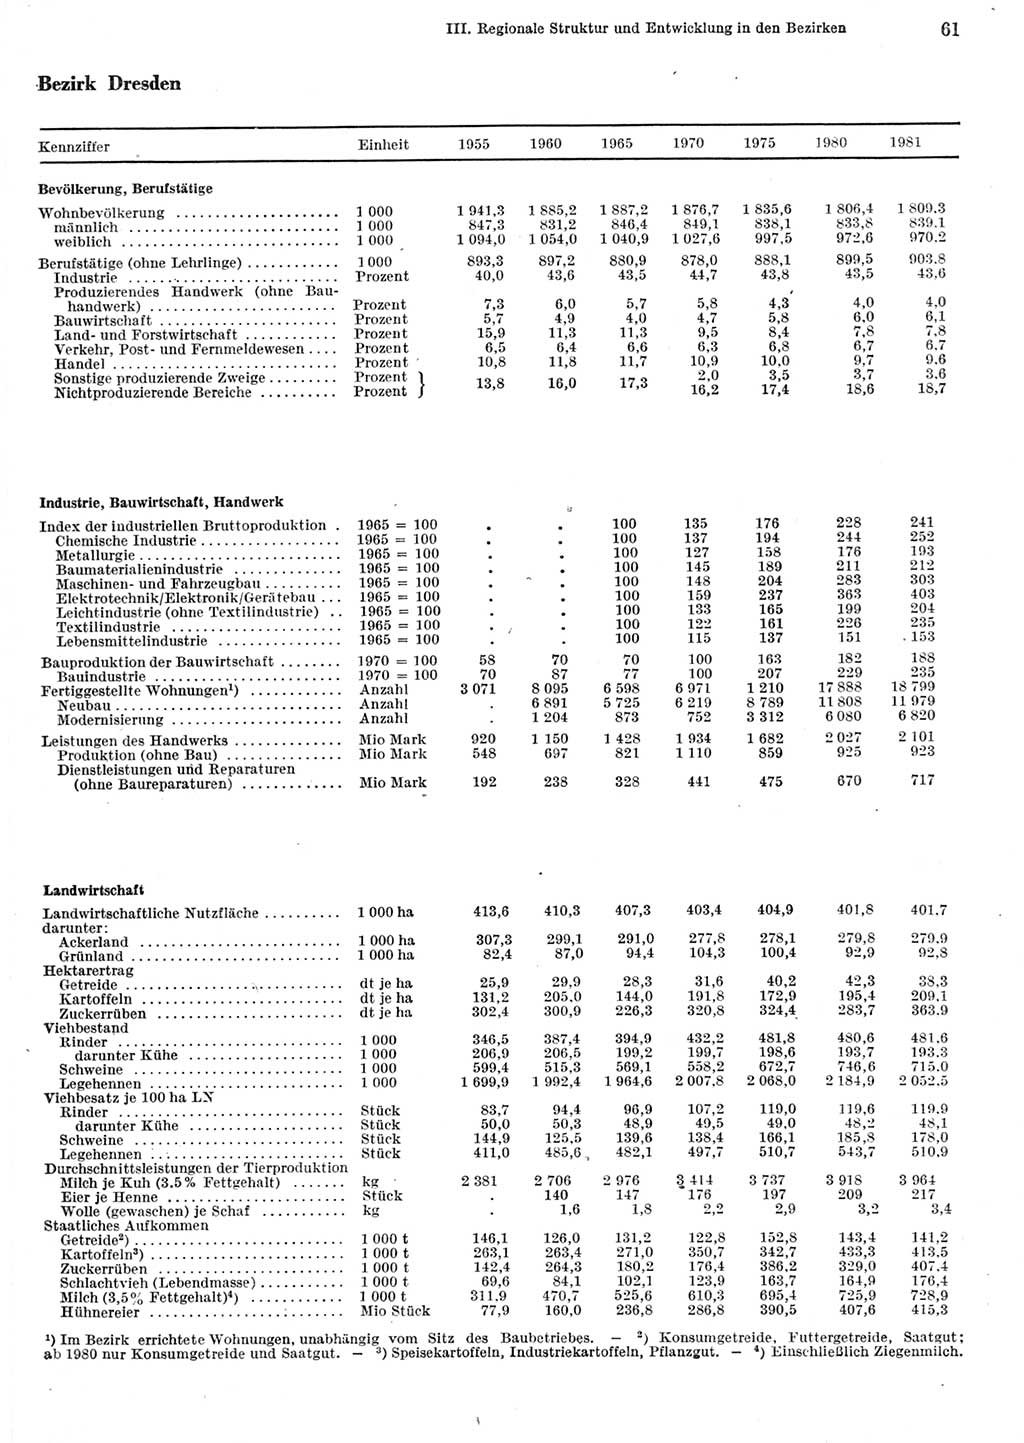 Statistisches Jahrbuch der Deutschen Demokratischen Republik (DDR) 1982, Seite 61 (Stat. Jb. DDR 1982, S. 61)